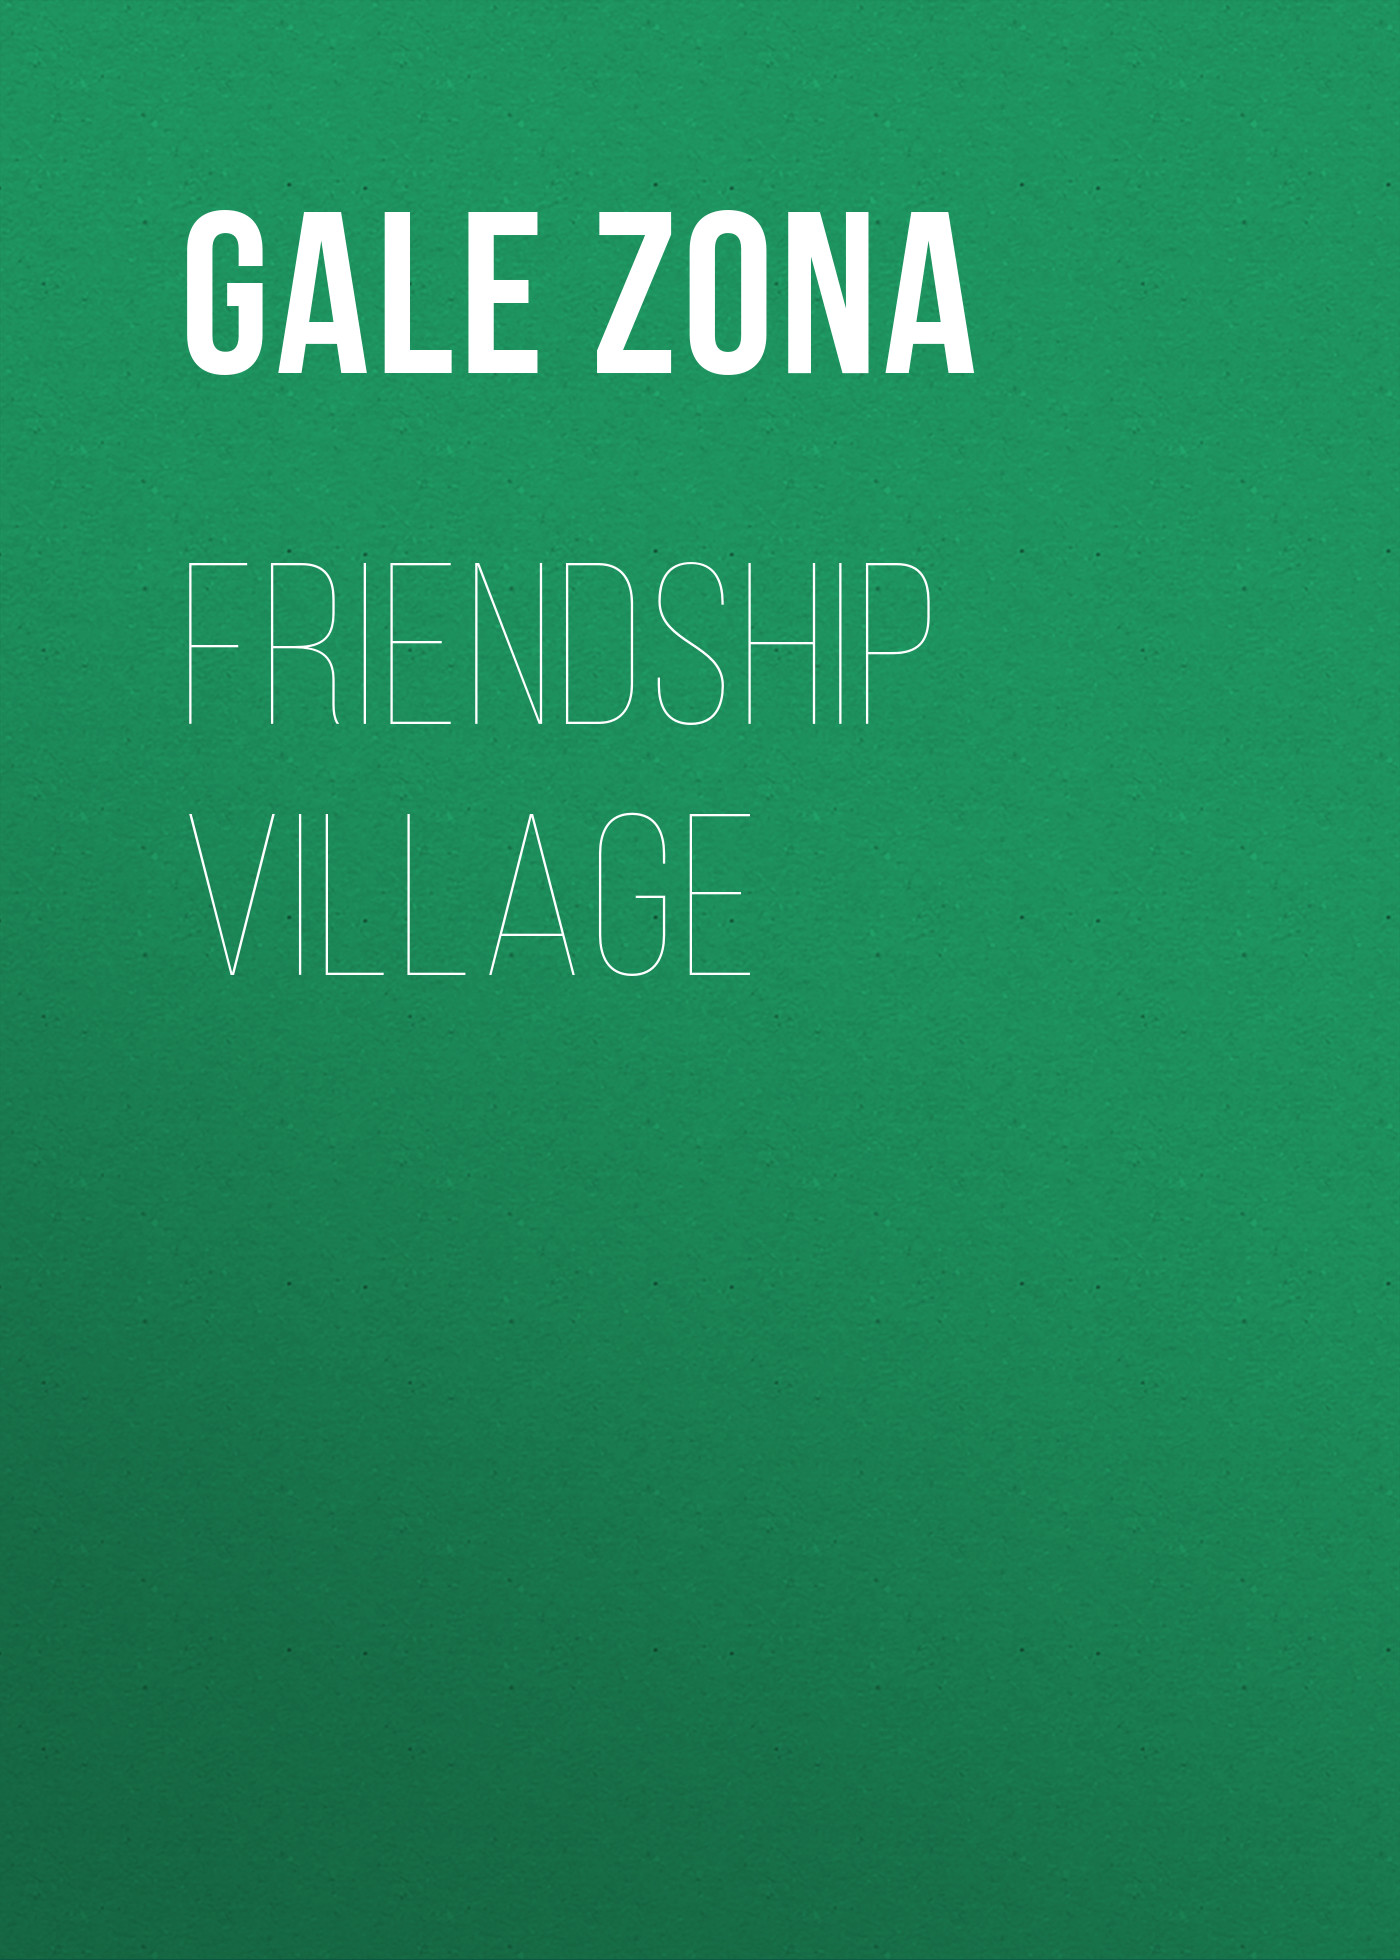 Книга Friendship Village из серии , созданная Zona Gale, может относится к жанру Зарубежная старинная литература, Зарубежная классика. Стоимость электронной книги Friendship Village с идентификатором 24859387 составляет 0 руб.